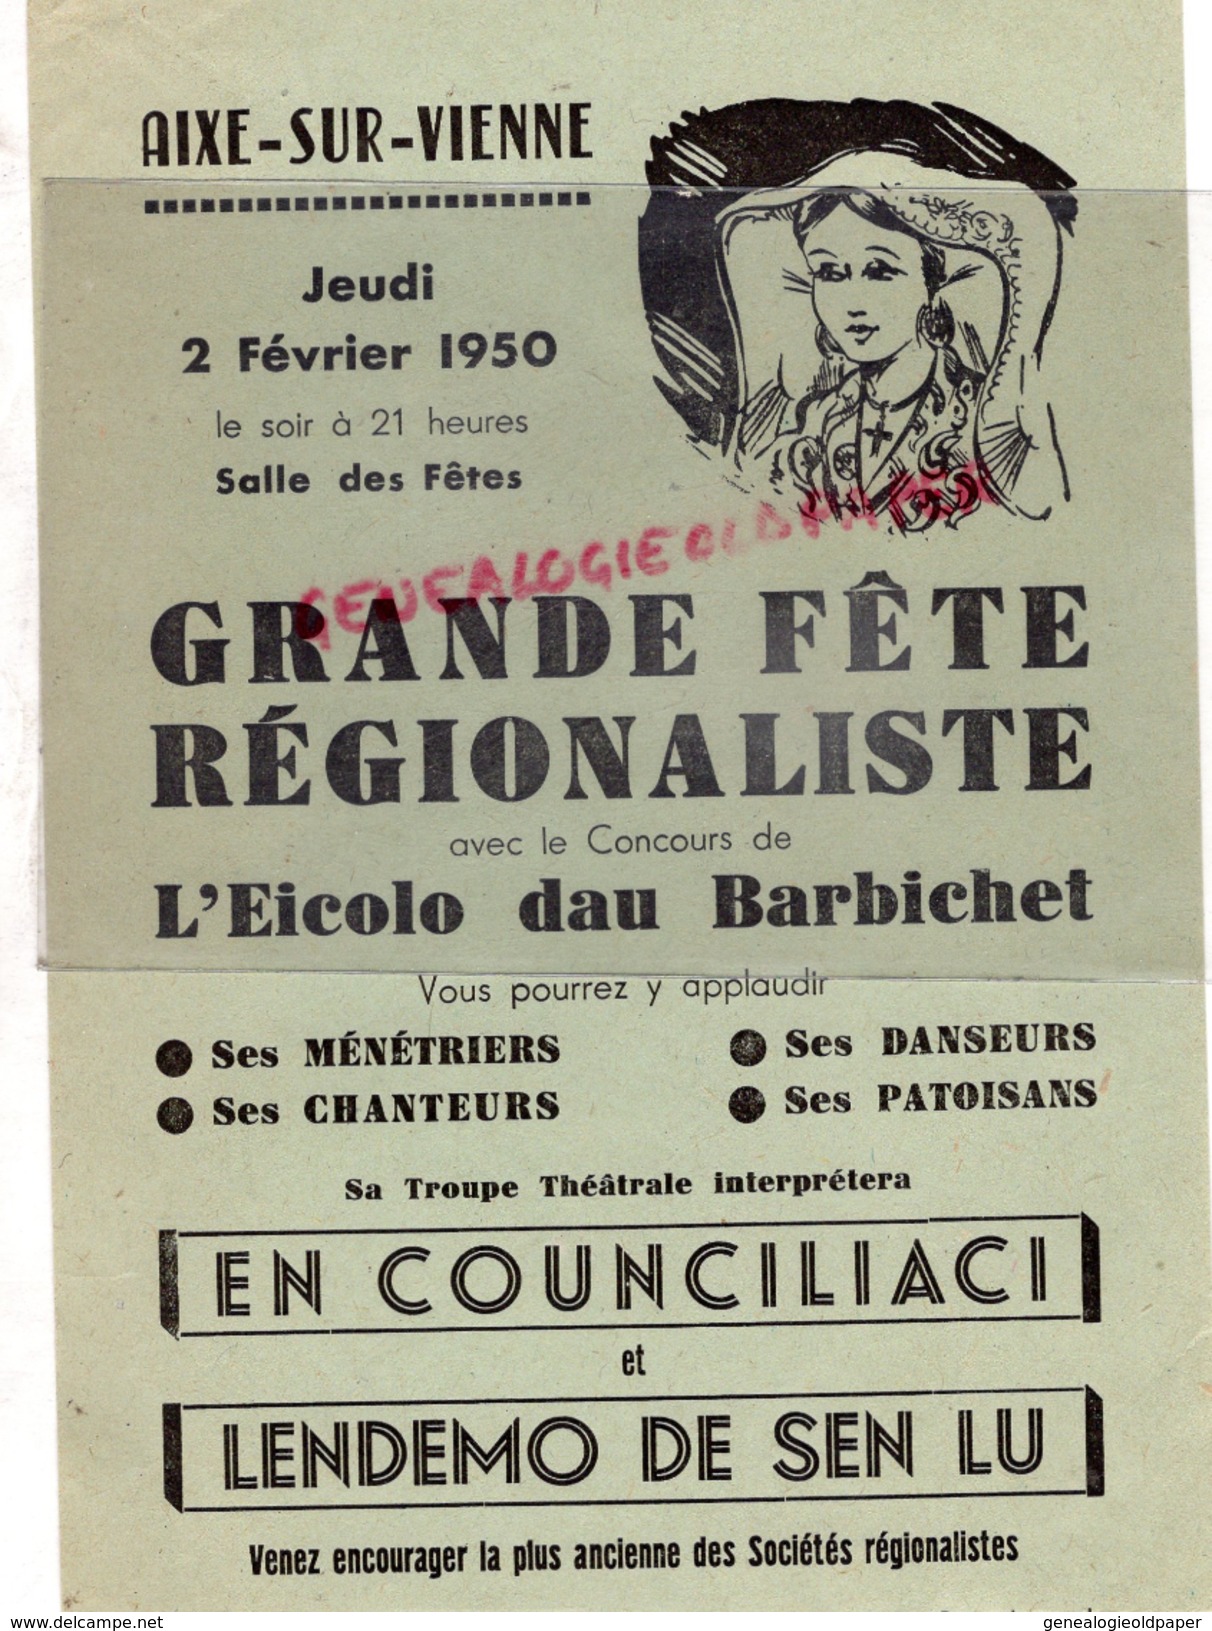 87 - AIXE SUR VIENNE- AFFICHE GRANDE FETE REGIONALISTE-EICOLO DAU BARBICHET-2 FEVRIER 1950- SALLE DES FETES - Plakate